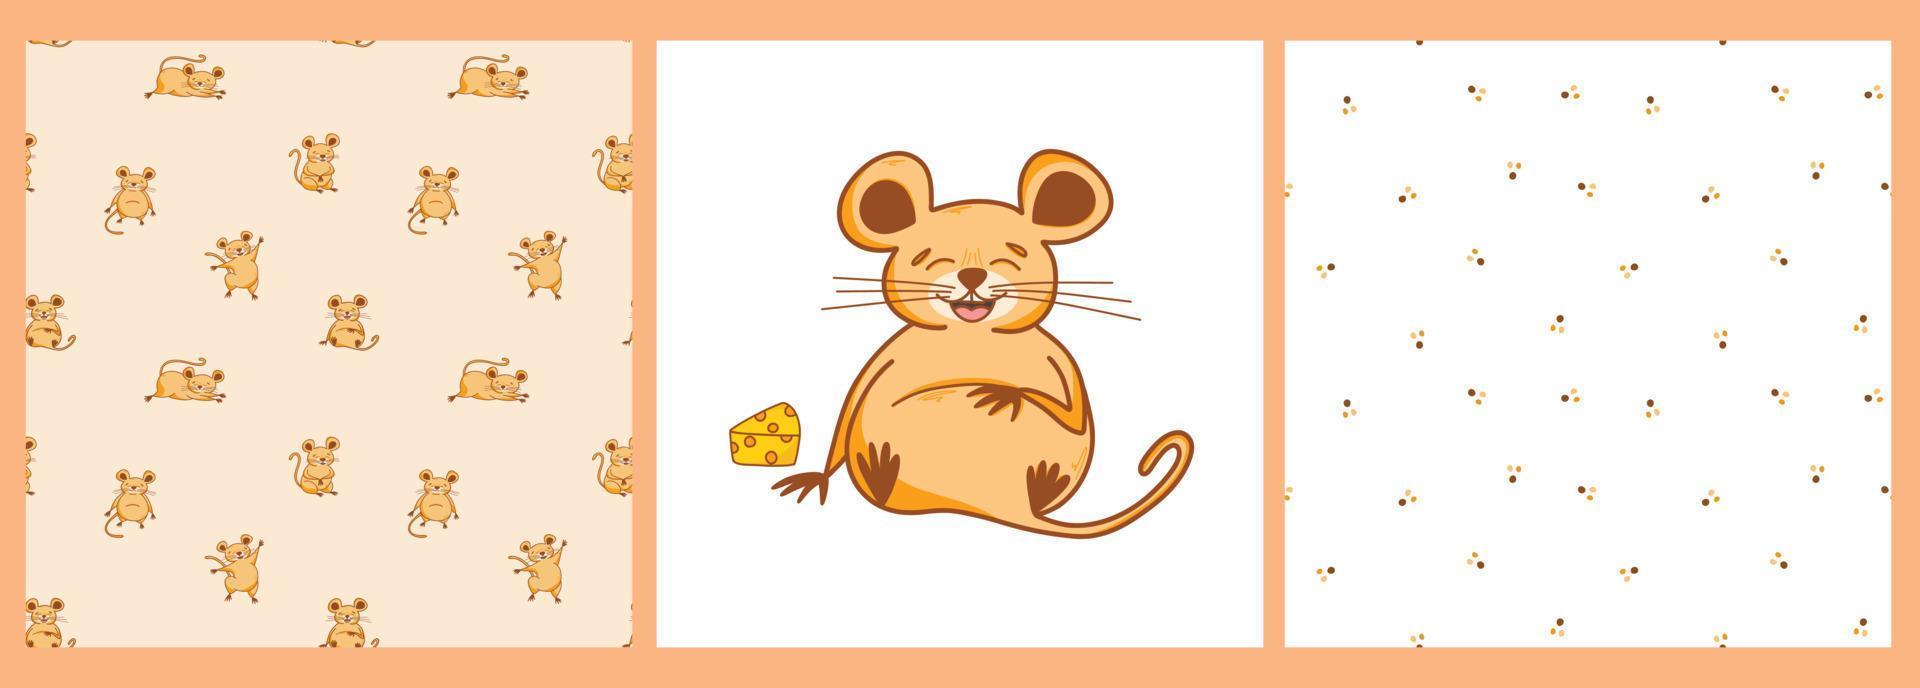 un conjunto de patrones y un afiche con un lindo personaje de ratón con un trozo de queso al estilo de las caricaturas, lindos animales, roedores. ilustración infantil para postales, afiches, camisetas, adolescentes, pegatinas vector